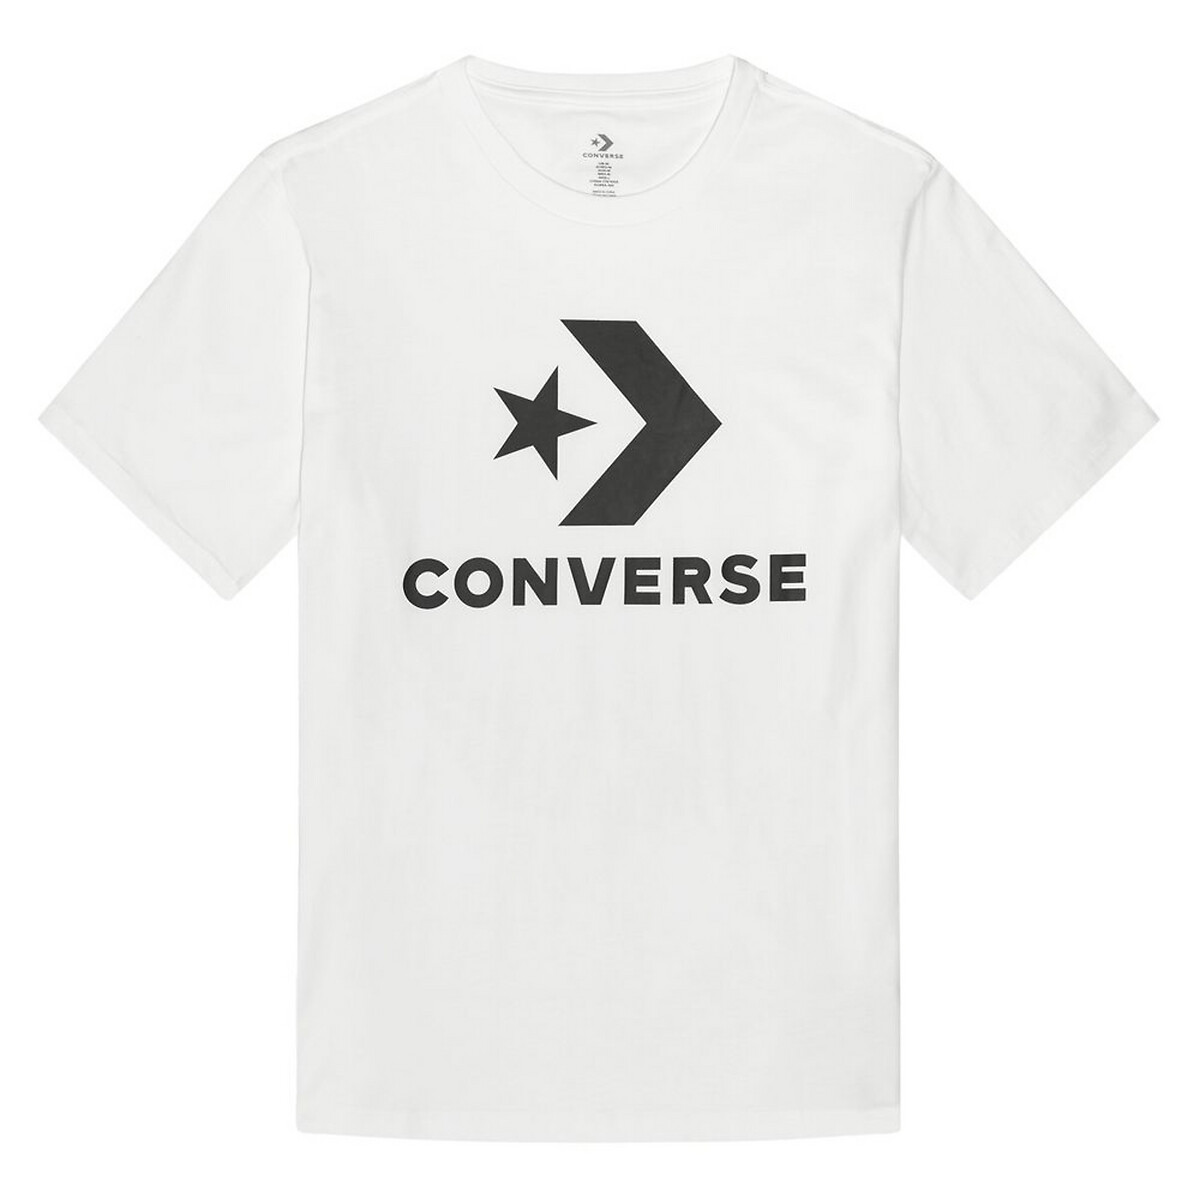 converse t shirt next